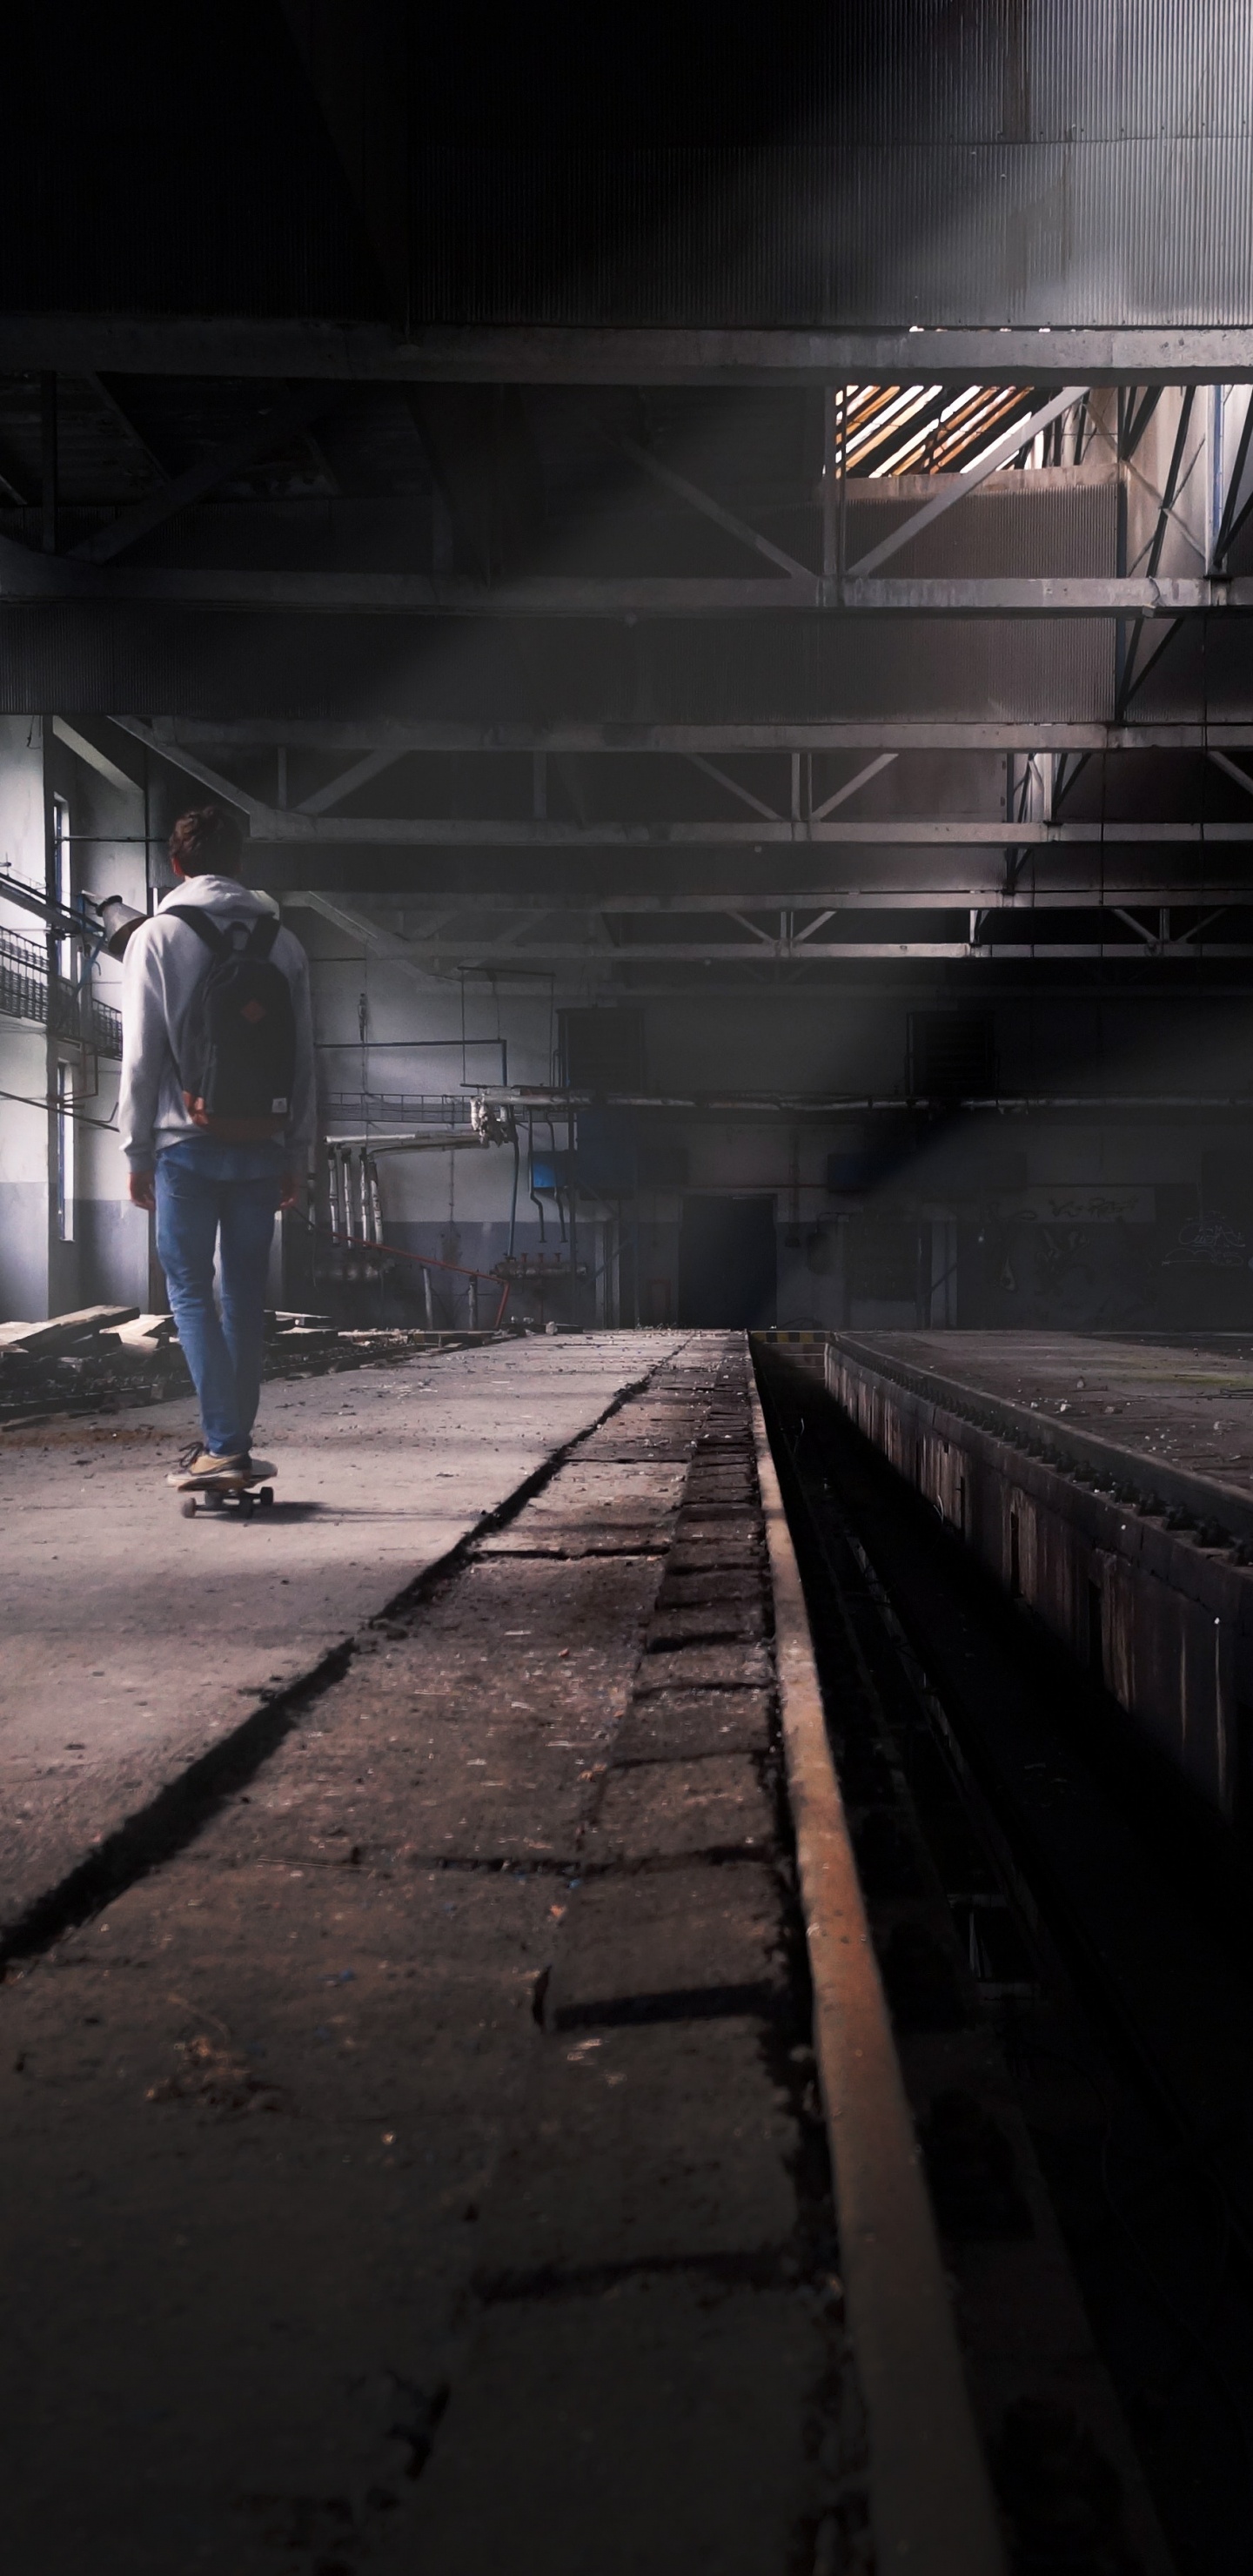 Hombre en Blue Jeans Caminando en la Estación de Tren. Wallpaper in 1440x2960 Resolution